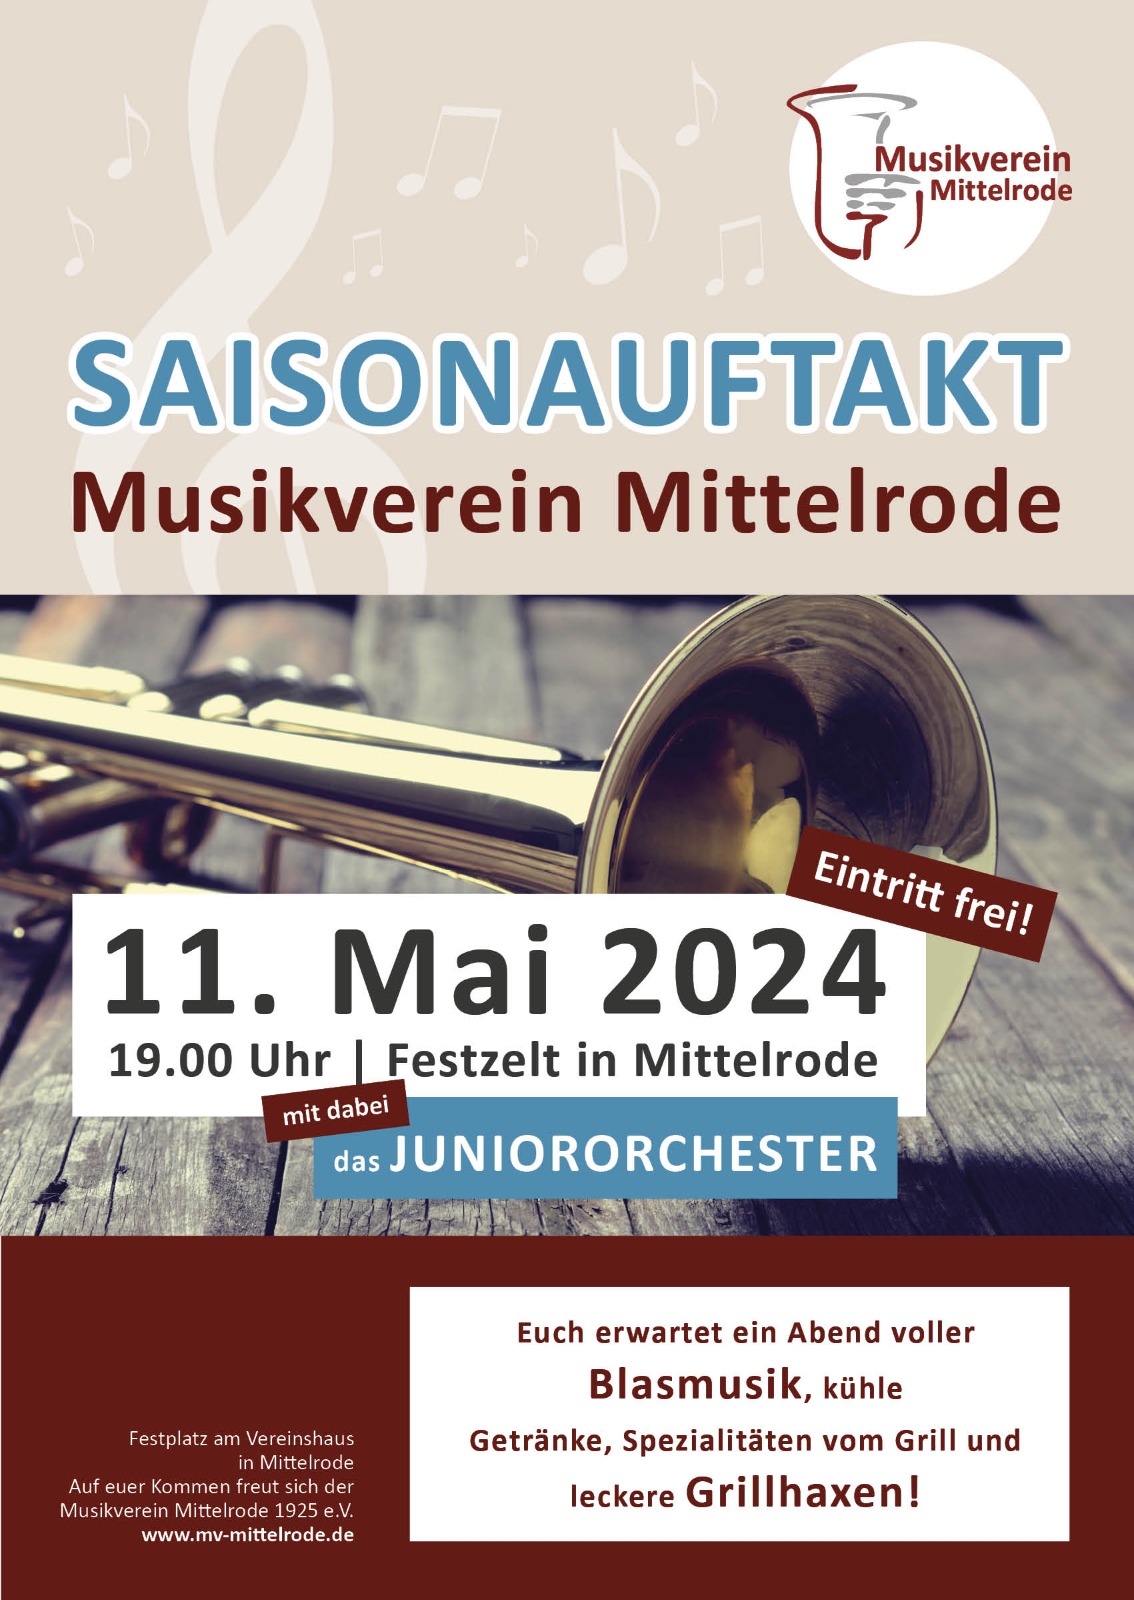 Saisonauftakt MV Mittelrode mit dabei: Juniororchester